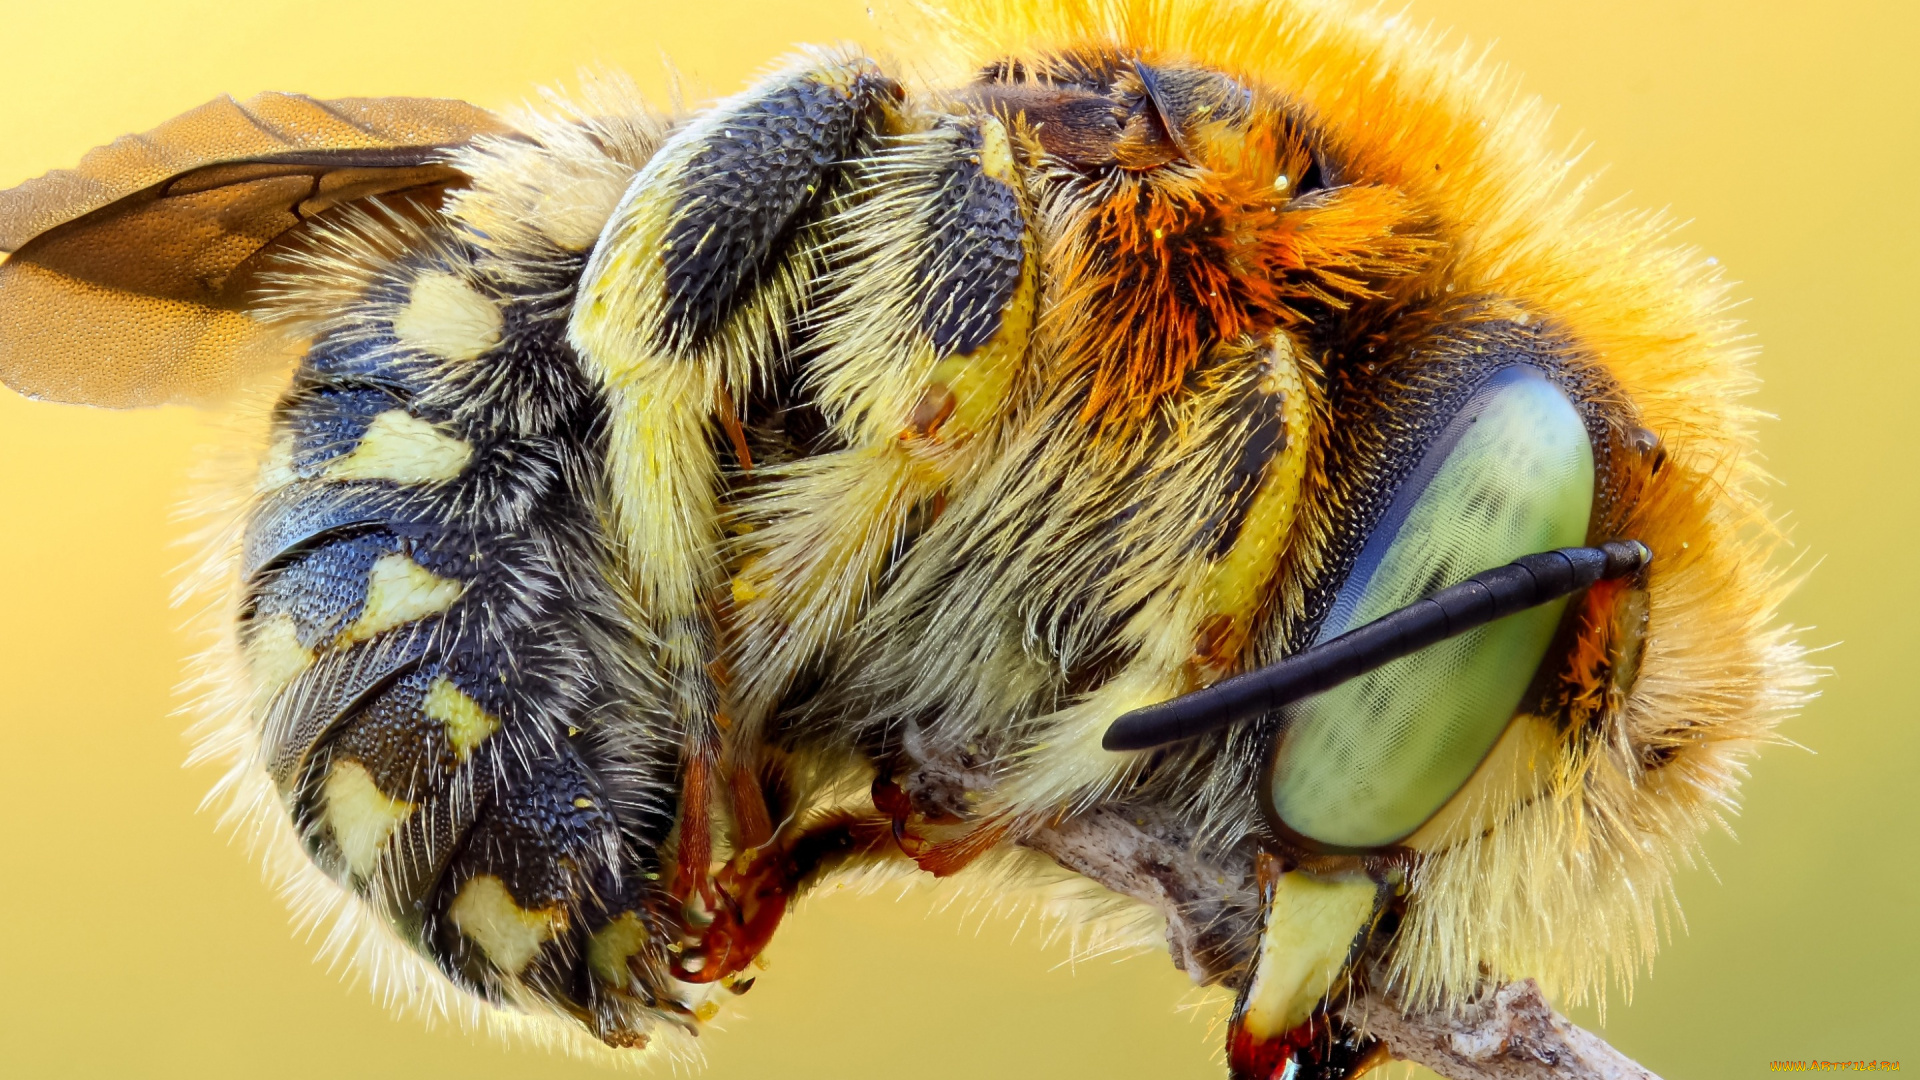 животные, пчелы, , осы, , шмели, мохнатый, полосатый, природа, брюшко, подробности, насекомое, стебель, желтый, пчела, глаза, макро, яркий, шмель, фон